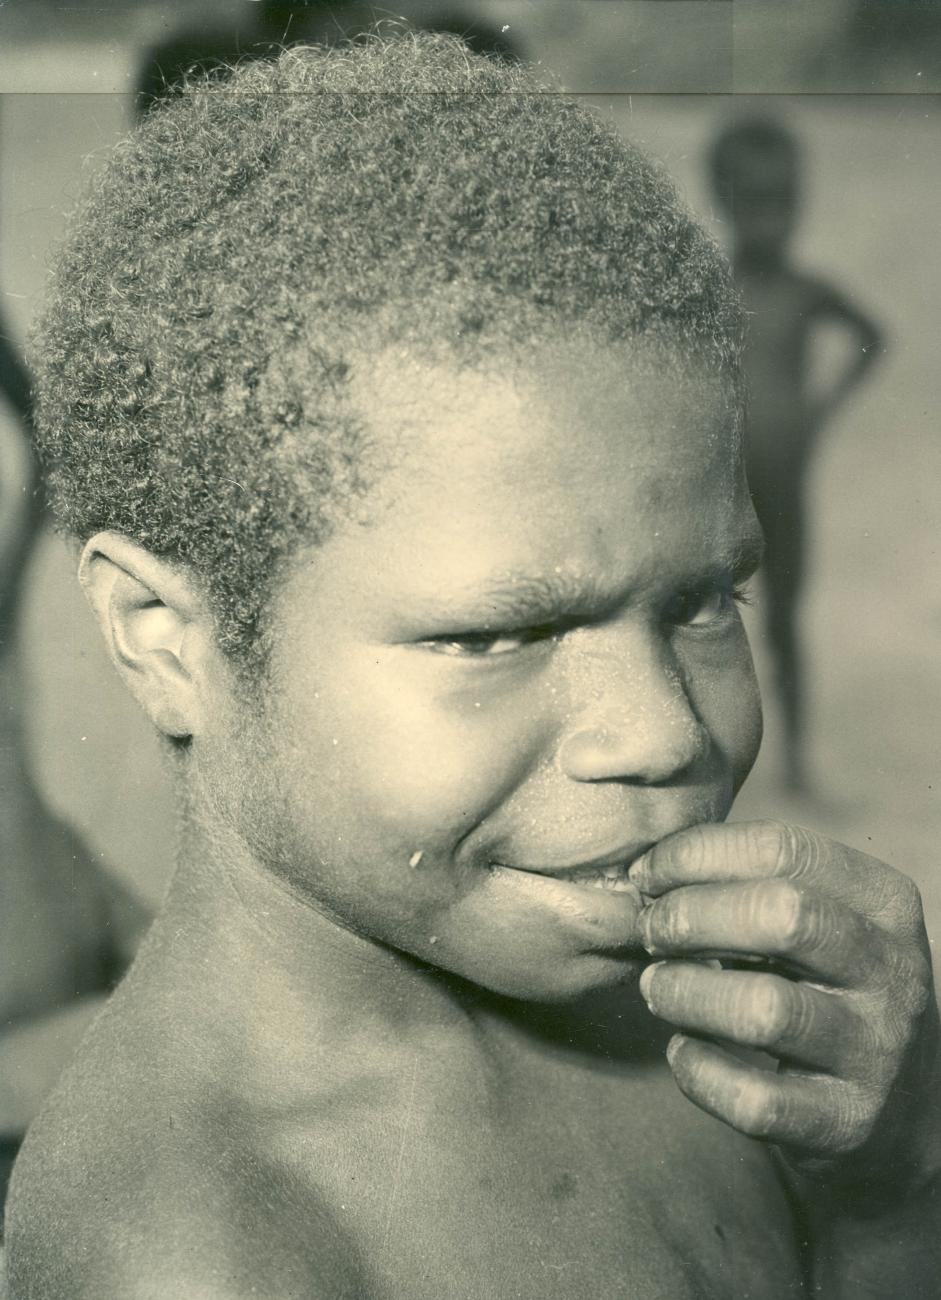 BD/40/96 - 
Papua boy
